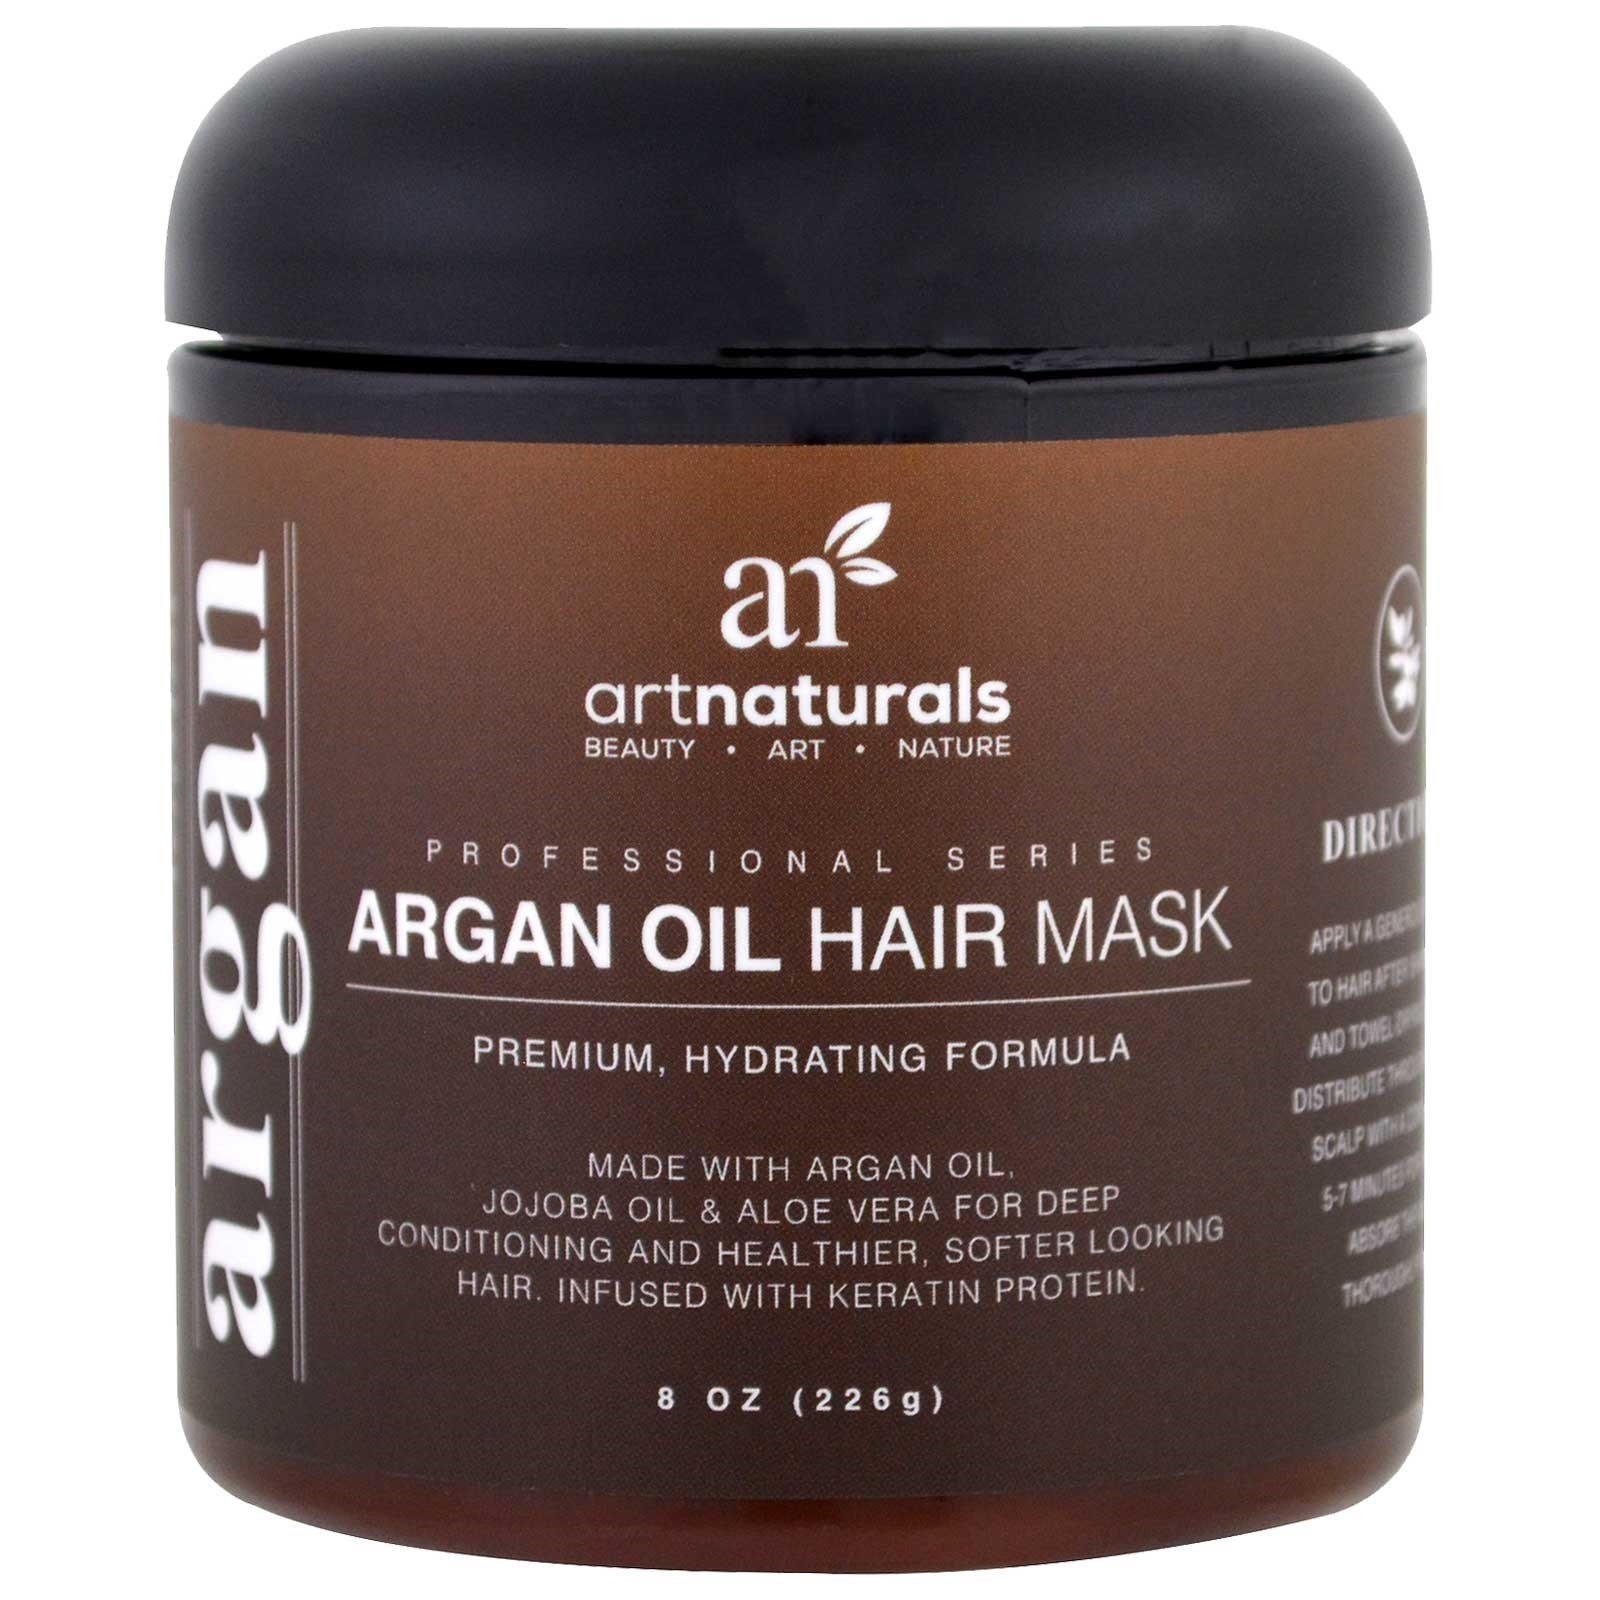 Питательная восстанавливающая маска. Argan Oil маска для волос. Mask Argan Oil масло. Argan Oil маска repairing. Маска для волос Armalla Argan Oil hair Mask.